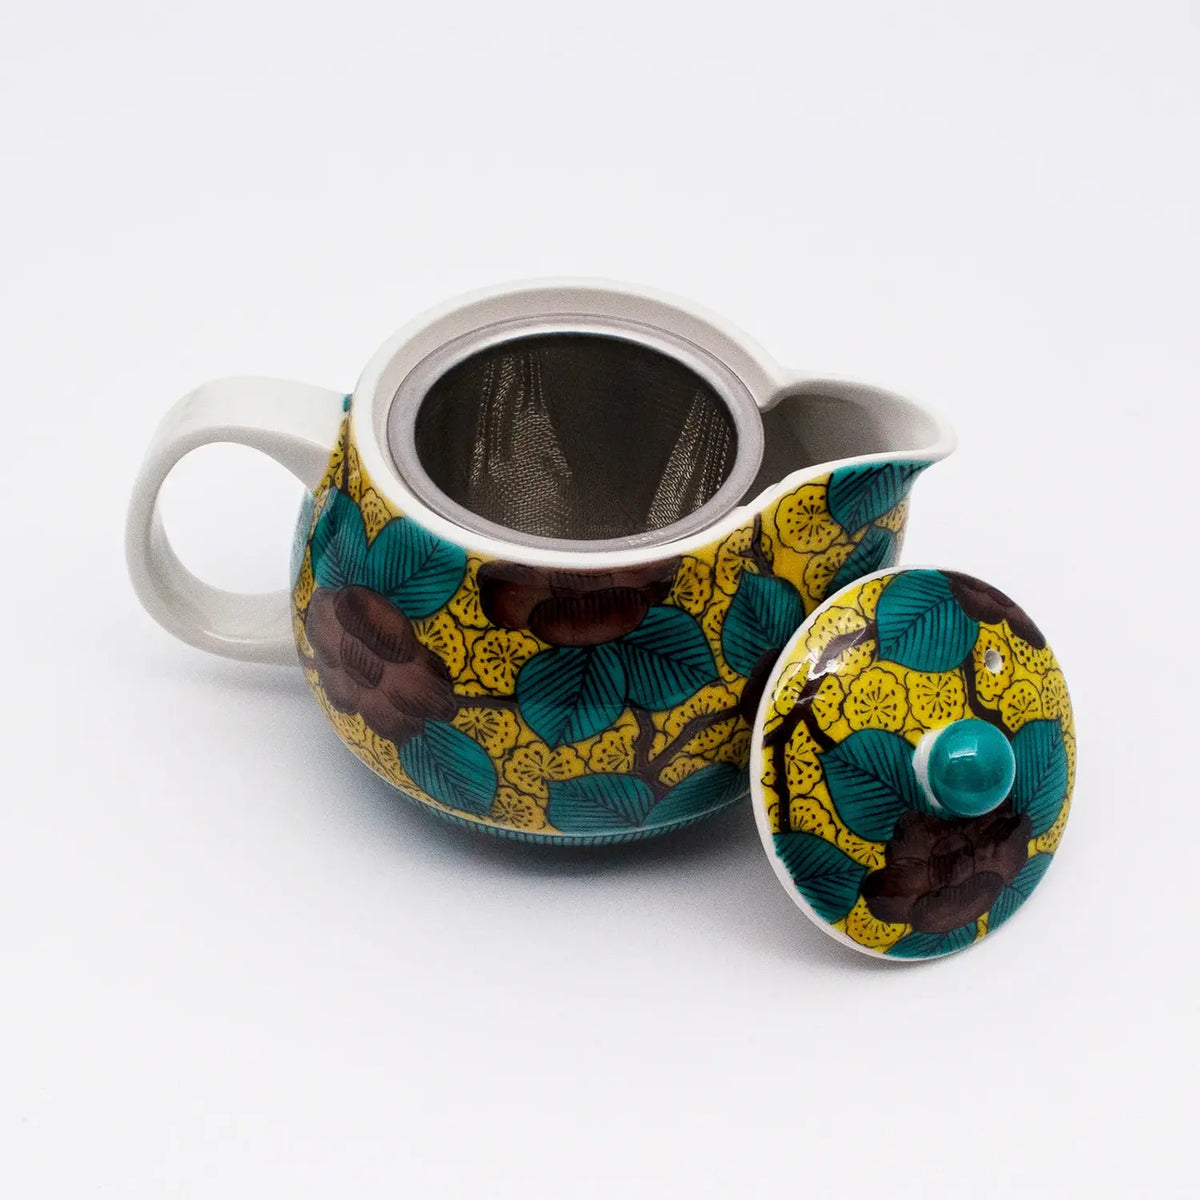 SEIKOU Kutani Porcelain Kyusu Teapot Aote-Tsubaki with Tea Strainer